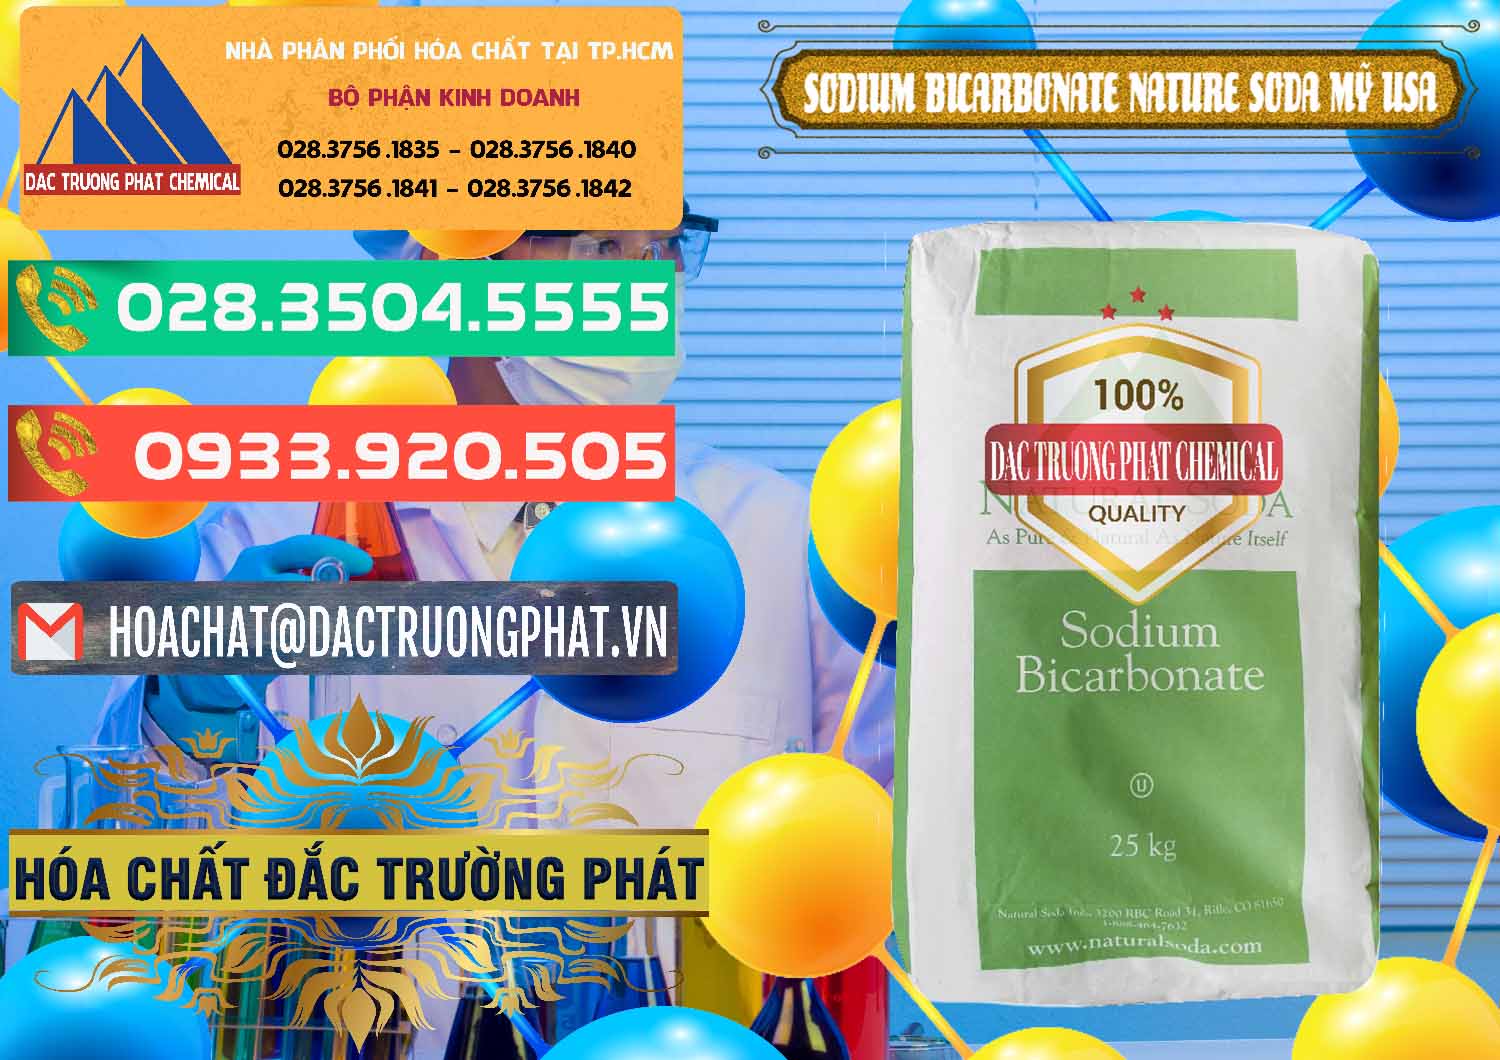 Cty chuyên cung ứng & bán Sodium Bicarbonate – Bicar NaHCO3 Food Grade Nature Soda Mỹ USA - 0256 - Công ty cung cấp và nhập khẩu hóa chất tại TP.HCM - congtyhoachat.com.vn